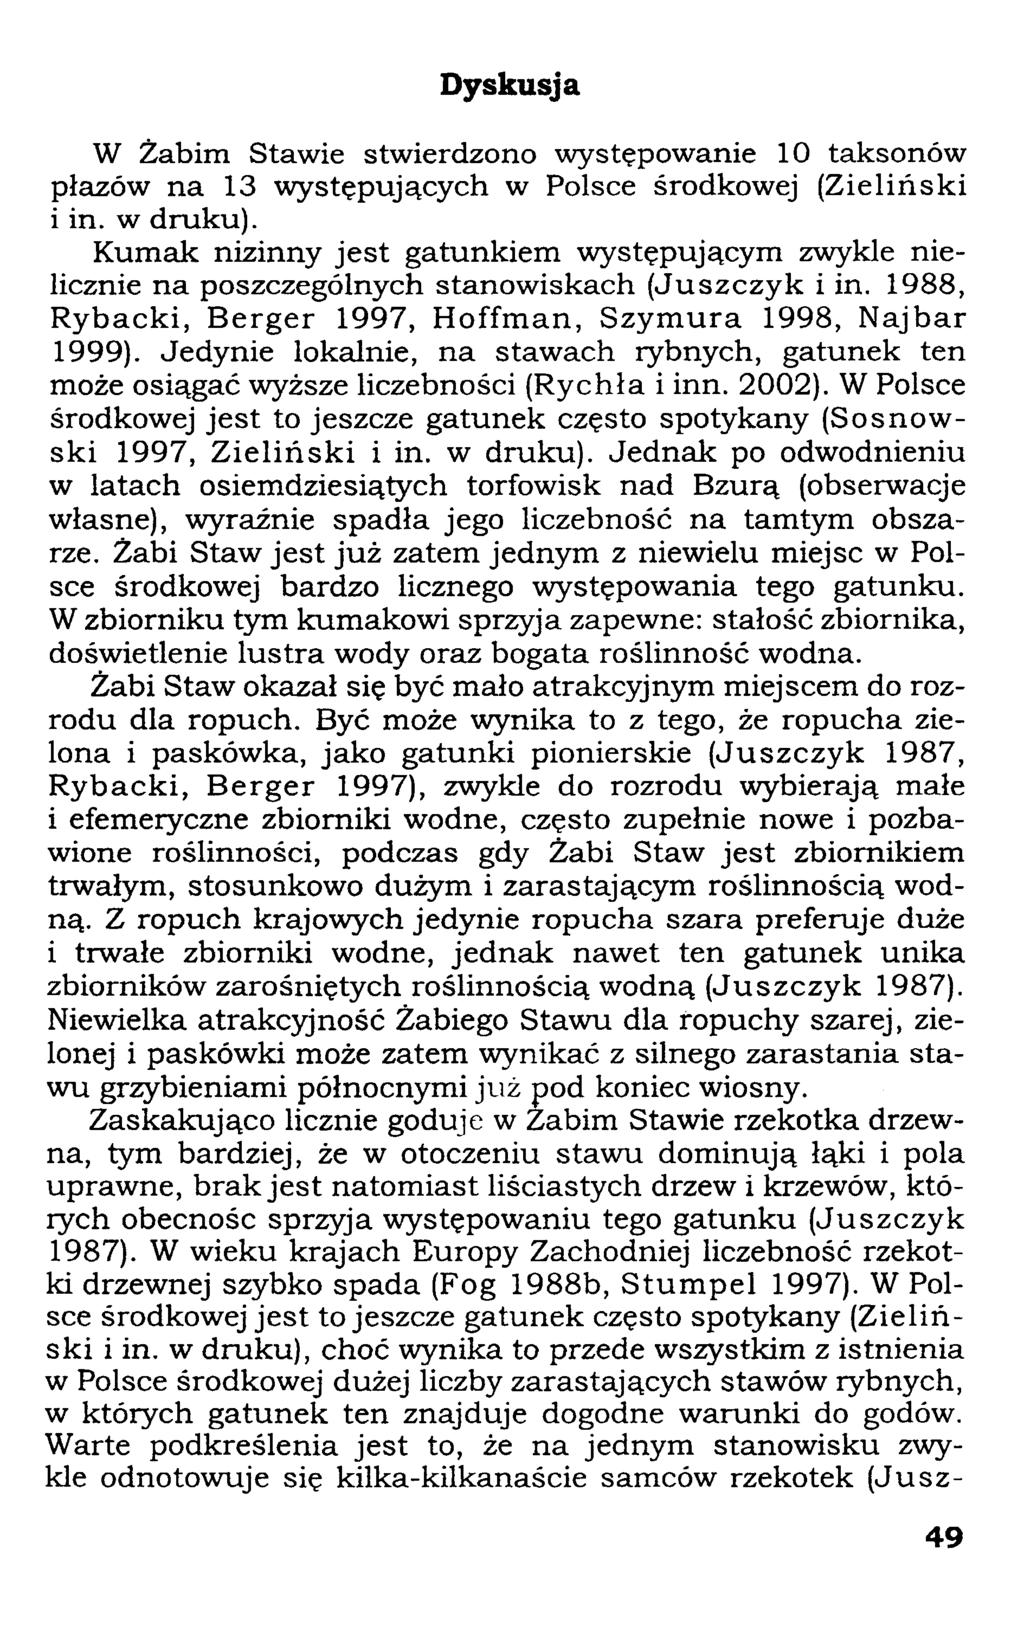 Dyskusja W Żabim Stawie stwierdzono występowanie 10 taksonów płazów na 13 występujących w Polsce środkowej (Zieliński i in. w druku).